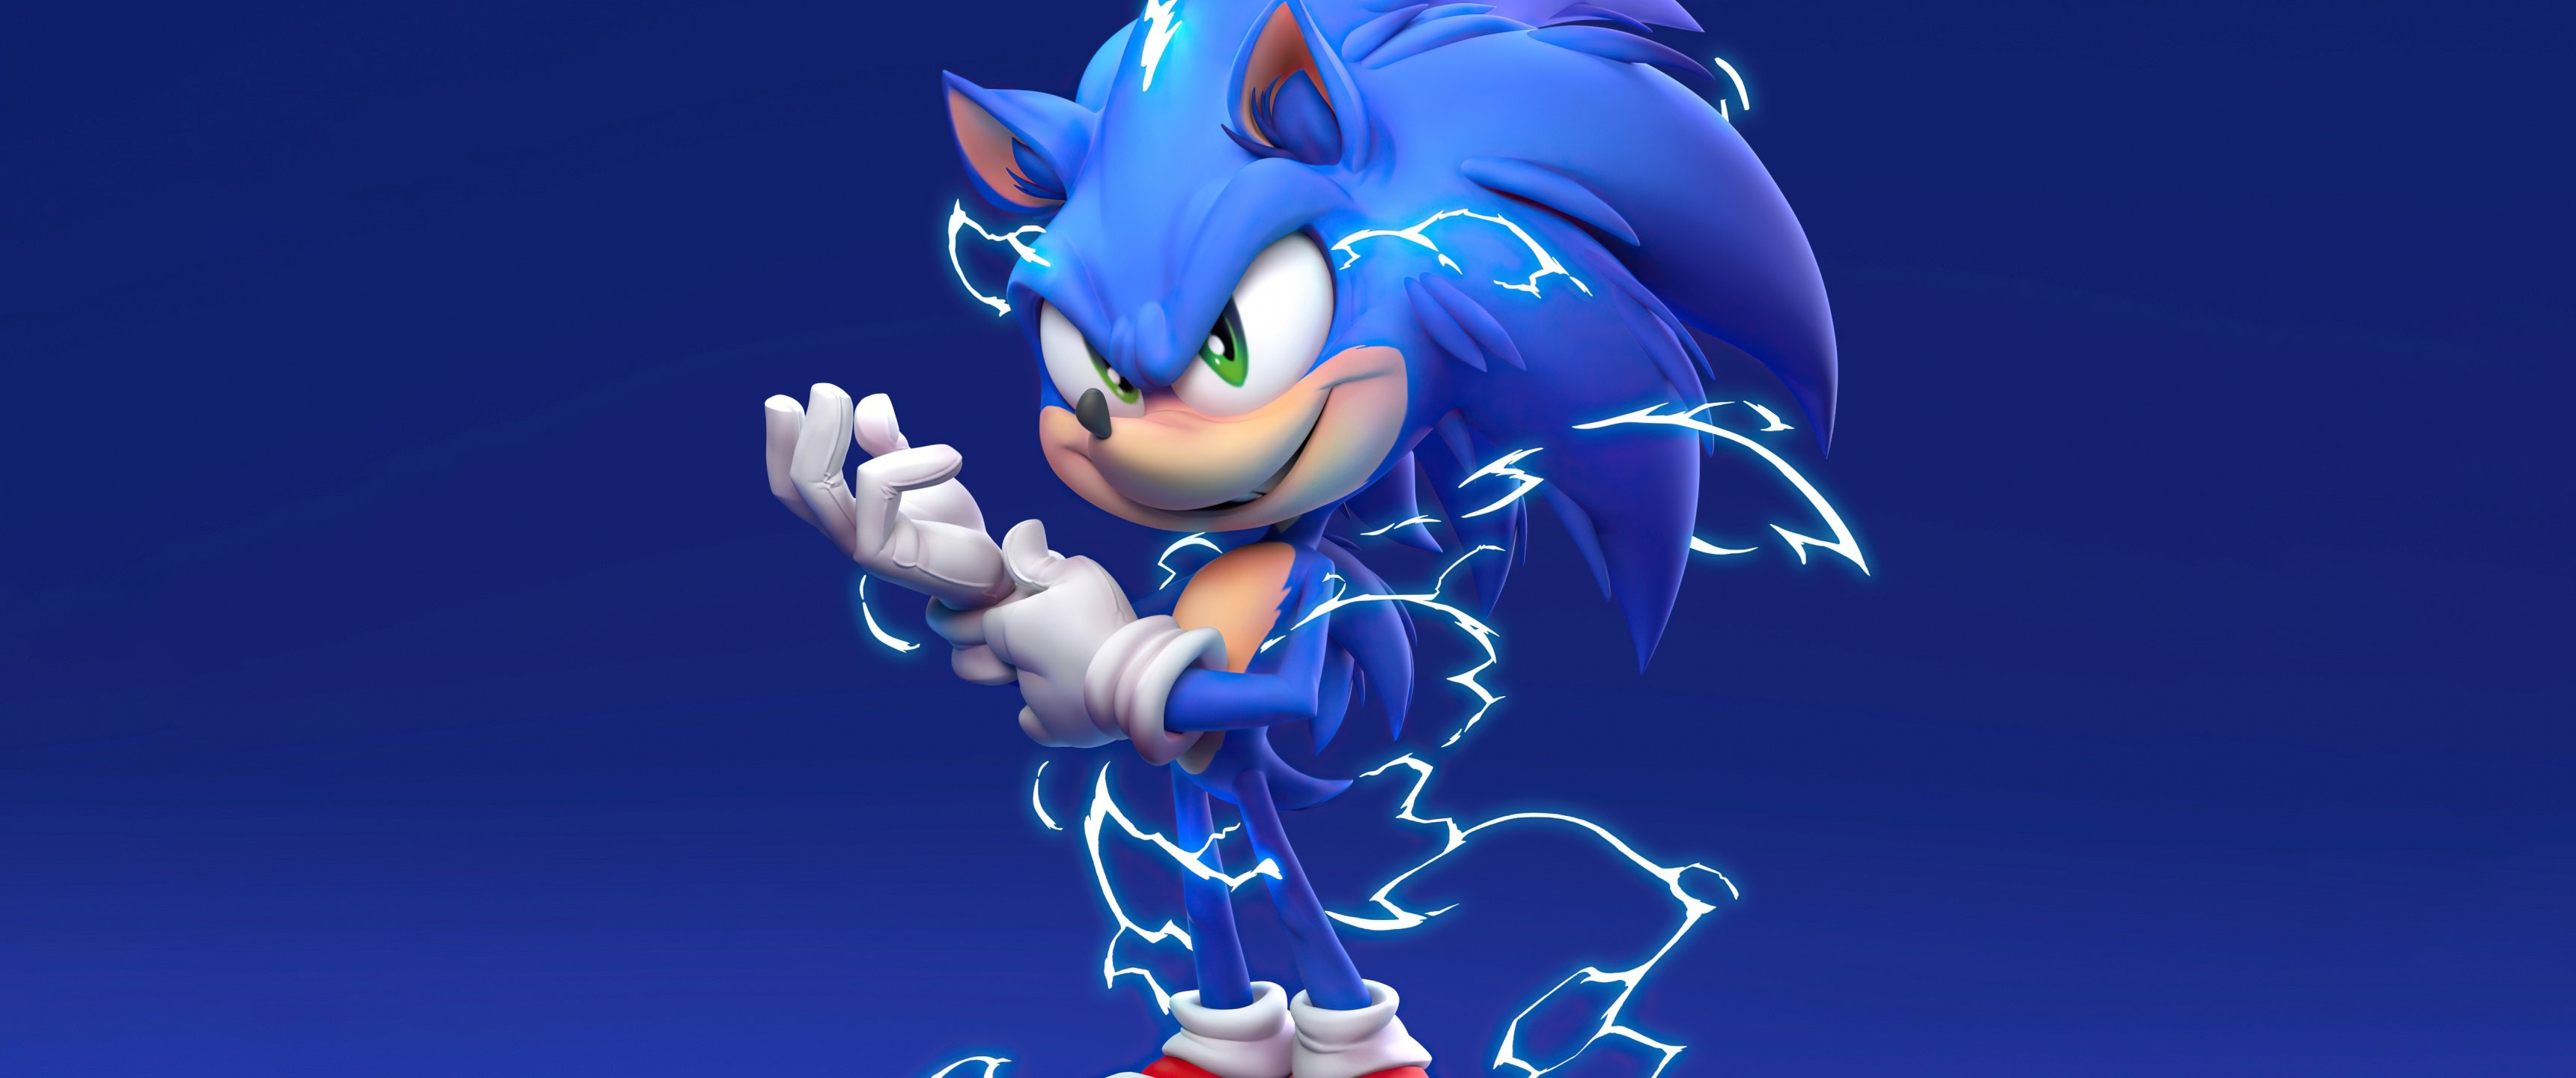 Sonic the Hedgehog Wallpaper 4K, Blue background, 5K